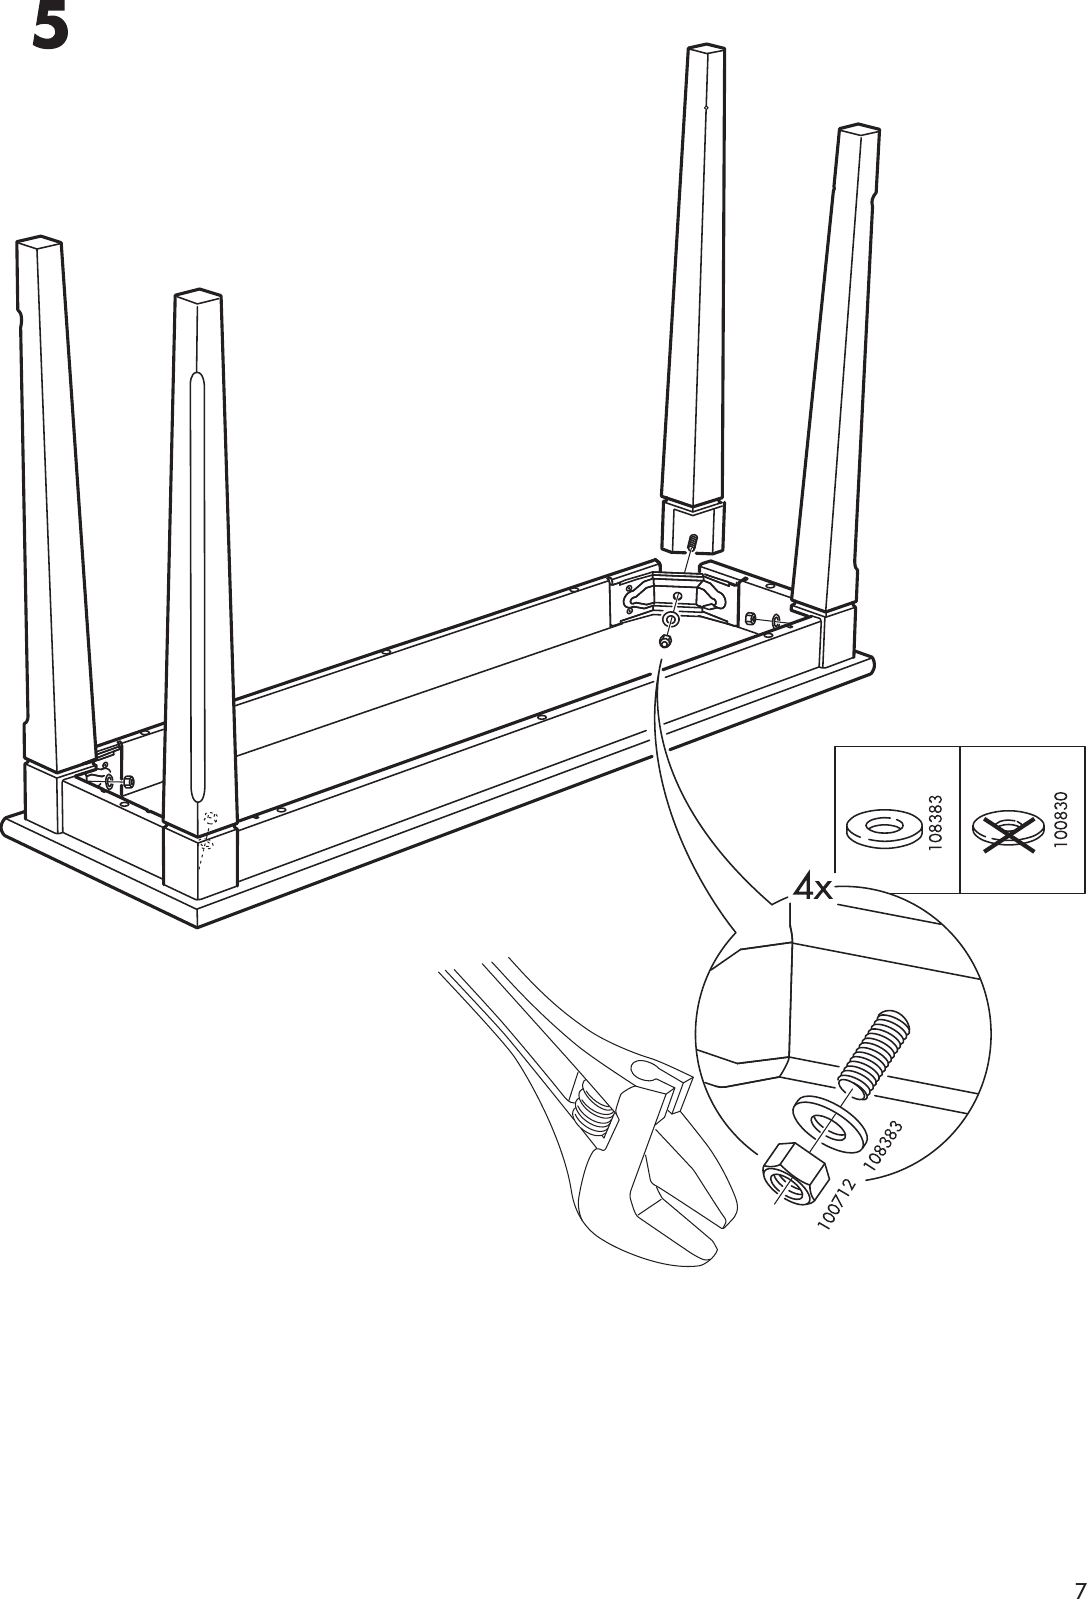 Page 7 of 8 - Ikea Ikea-Markar-Sofa-Table-47X14X30-Assembly-Instruction